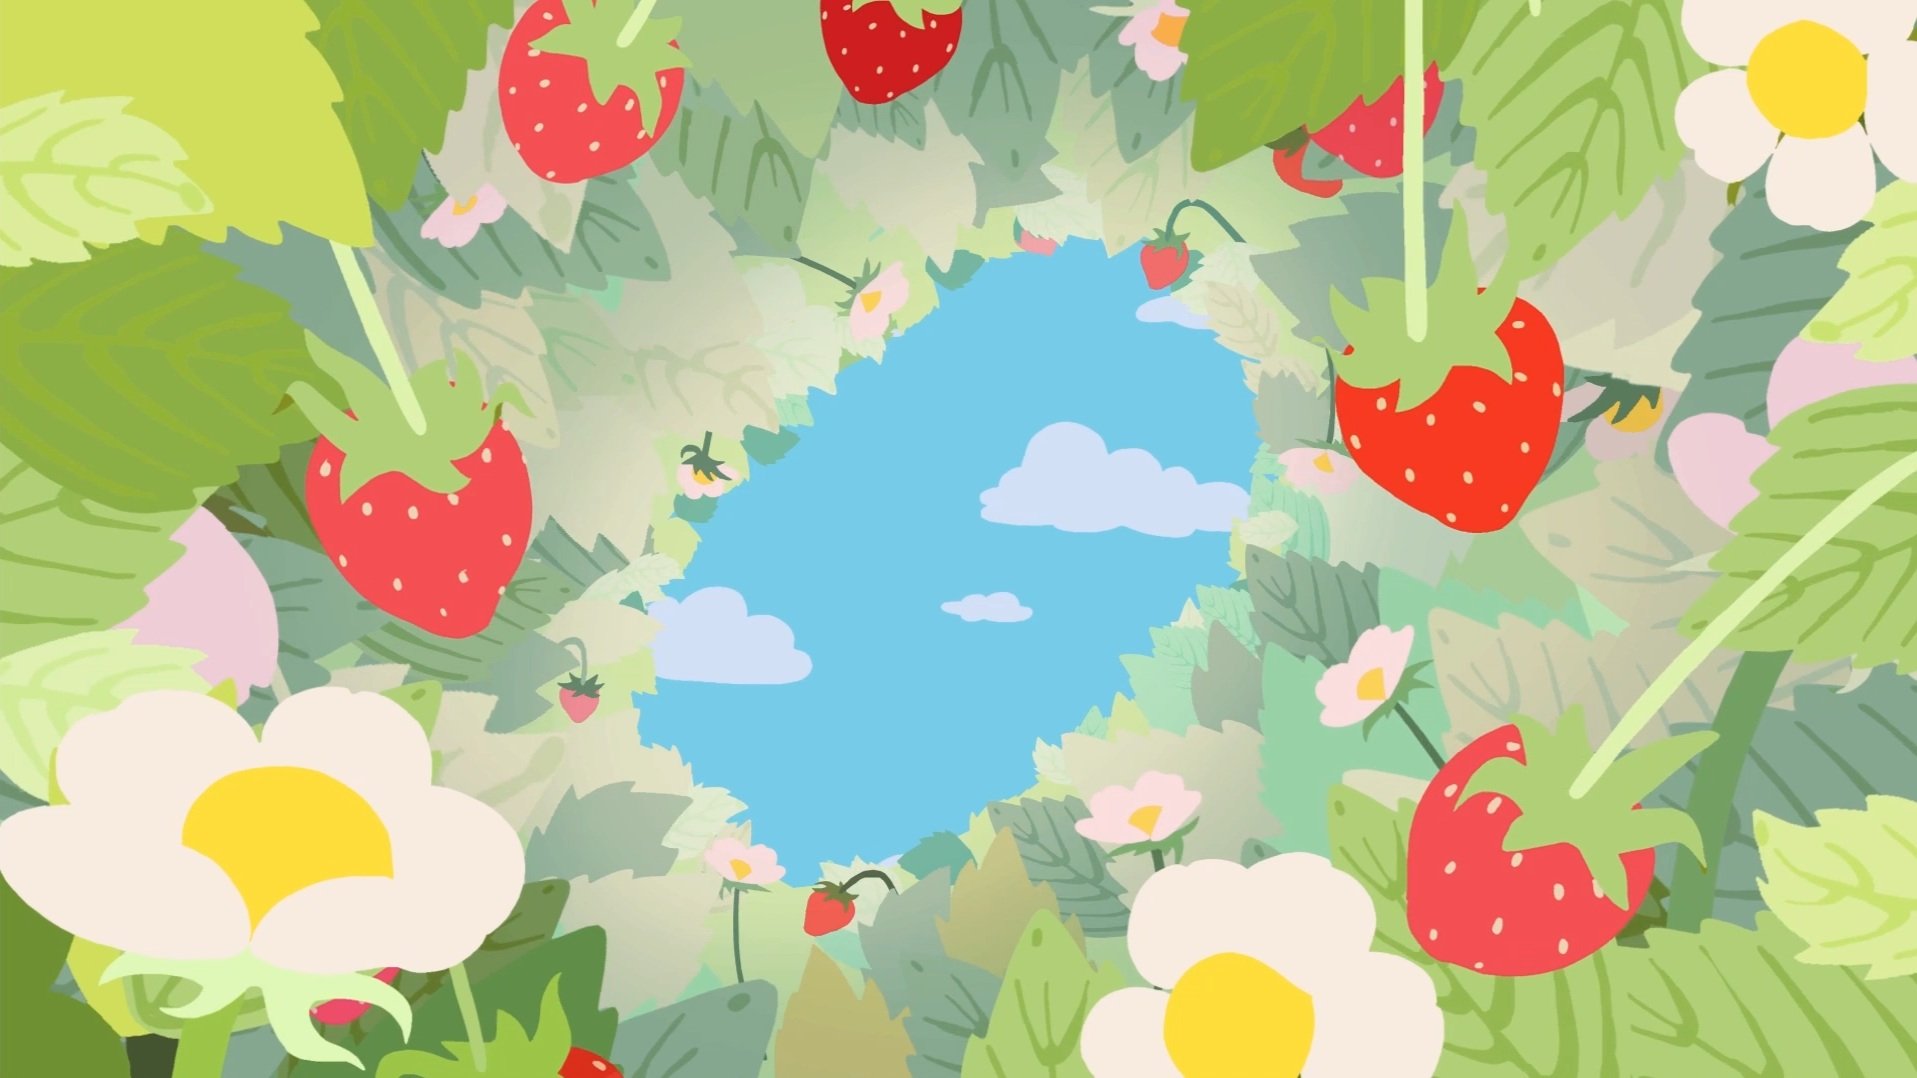 StrawberryBush.jpg